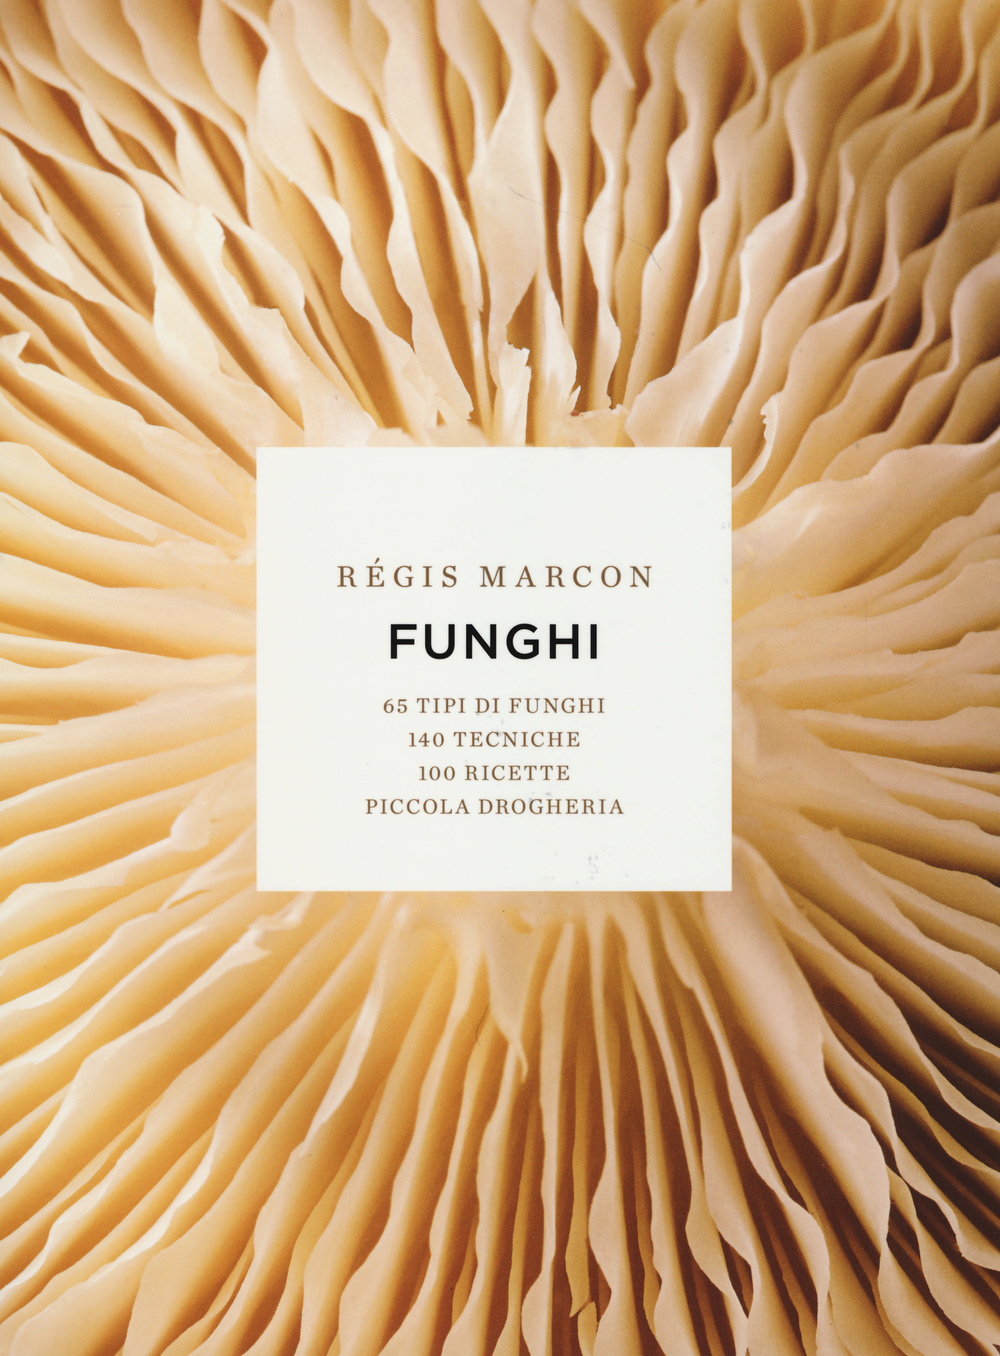 Funghi. 65 tipi di funghi, 140 tecniche, 100 ricette, piccola drogheria. Ediz. illustrata